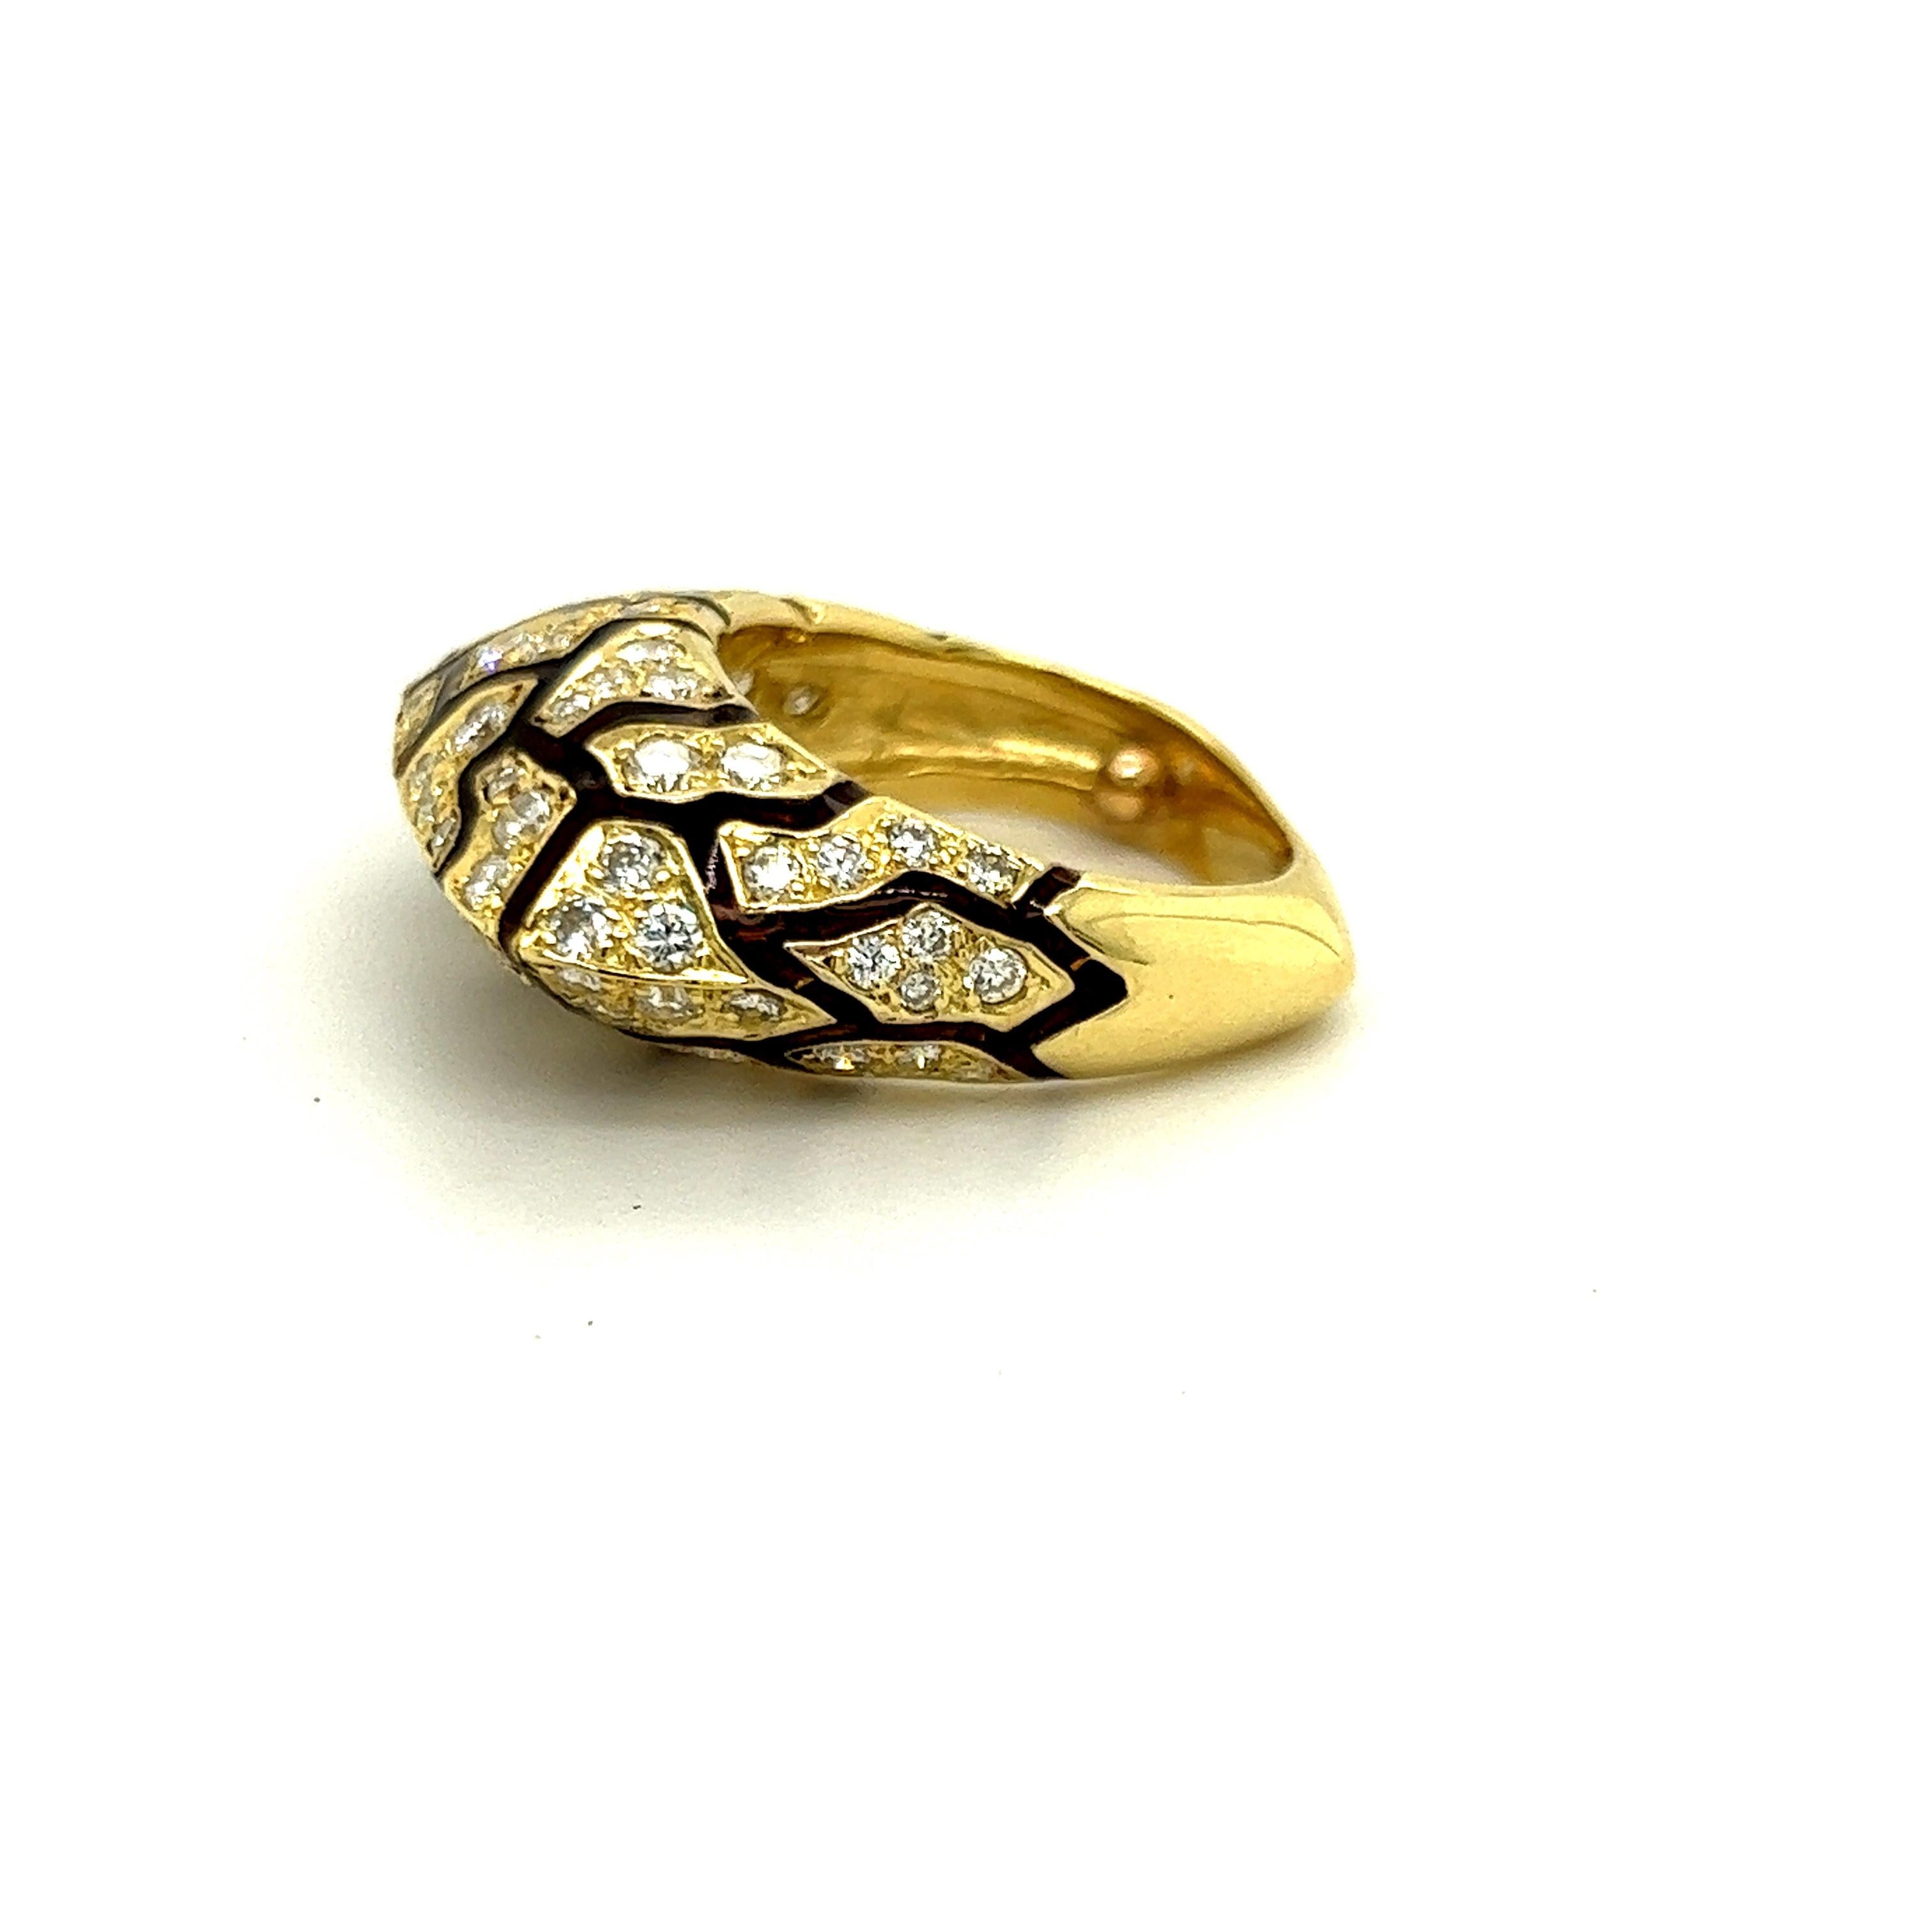 Bague en or jaune 18 carats diamants émail brun style zèbre

L'émail brun est réalisé entre les sections de diamant. 

Poids total des diamants : environ 1,5 ct.

0,40 pouce de largeur 

L'anneau est de taille 5 et peut être taillé sur demande.